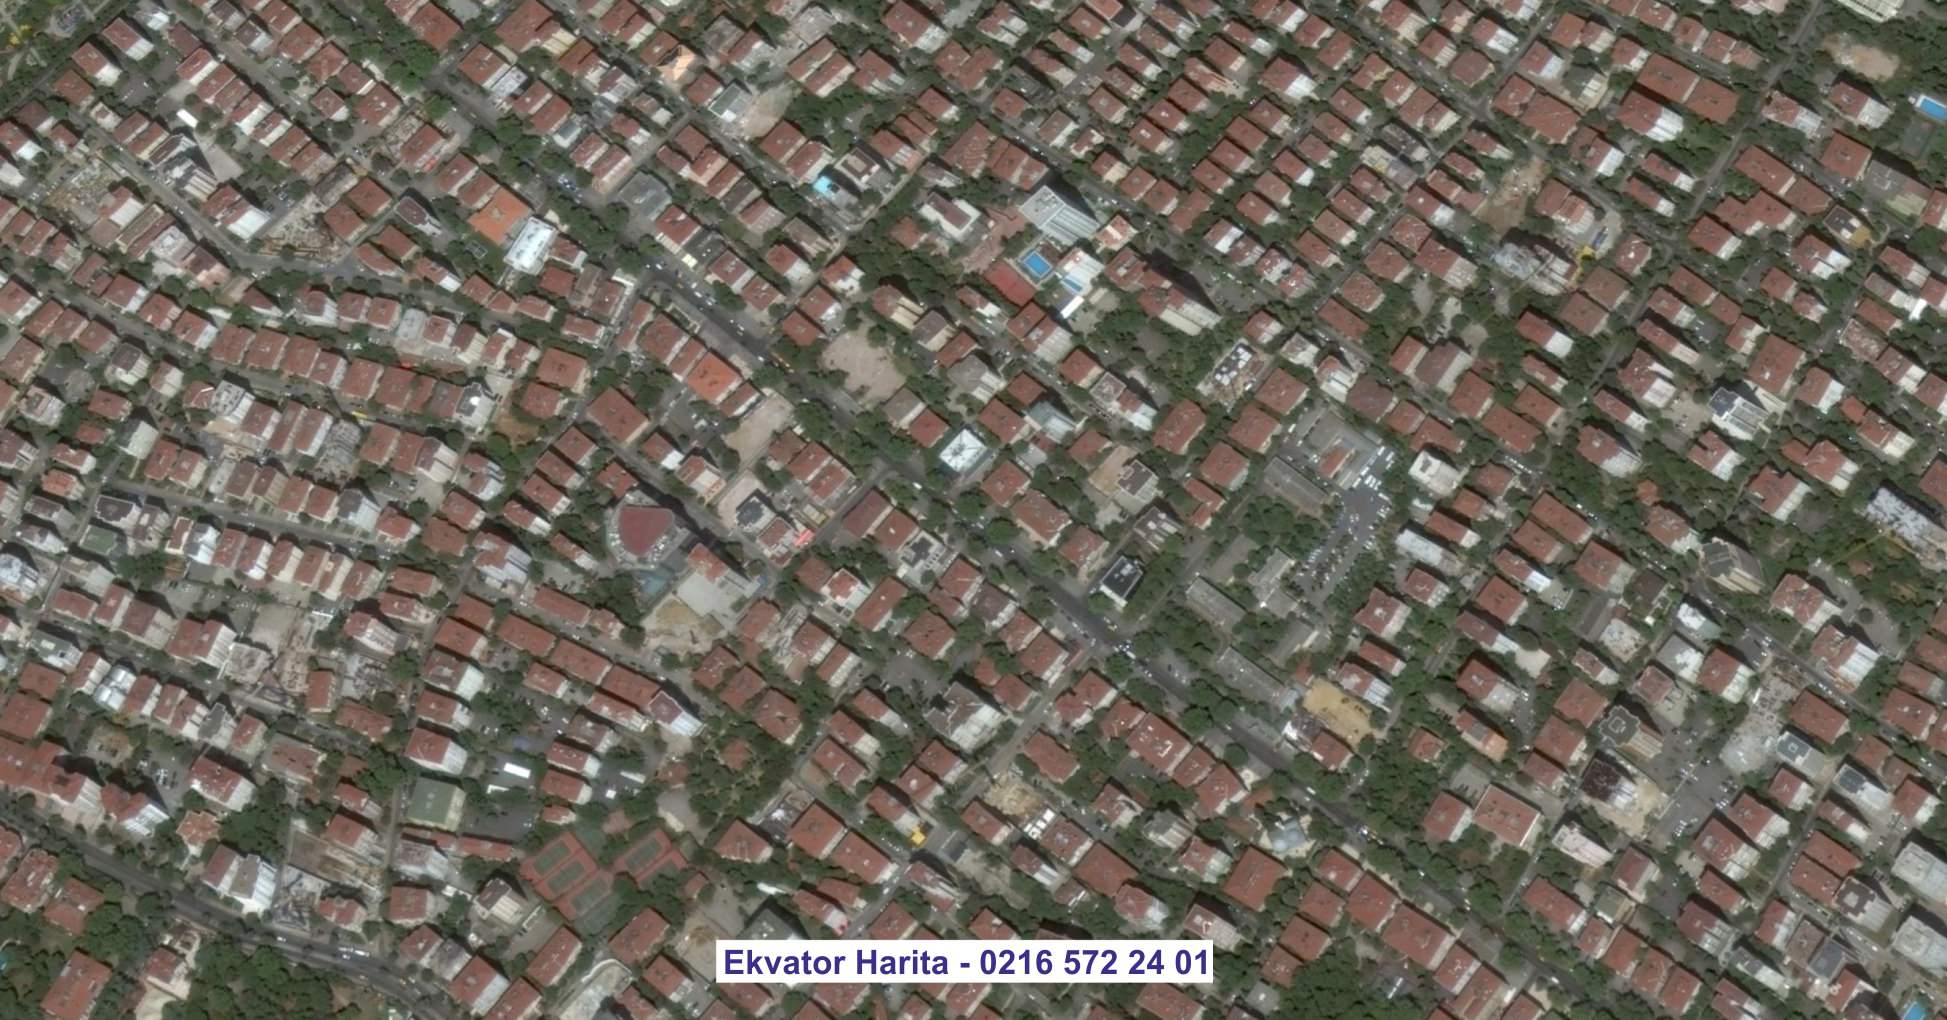 Karabük Uydu Görüntüsü Örnek Fotoğrafı